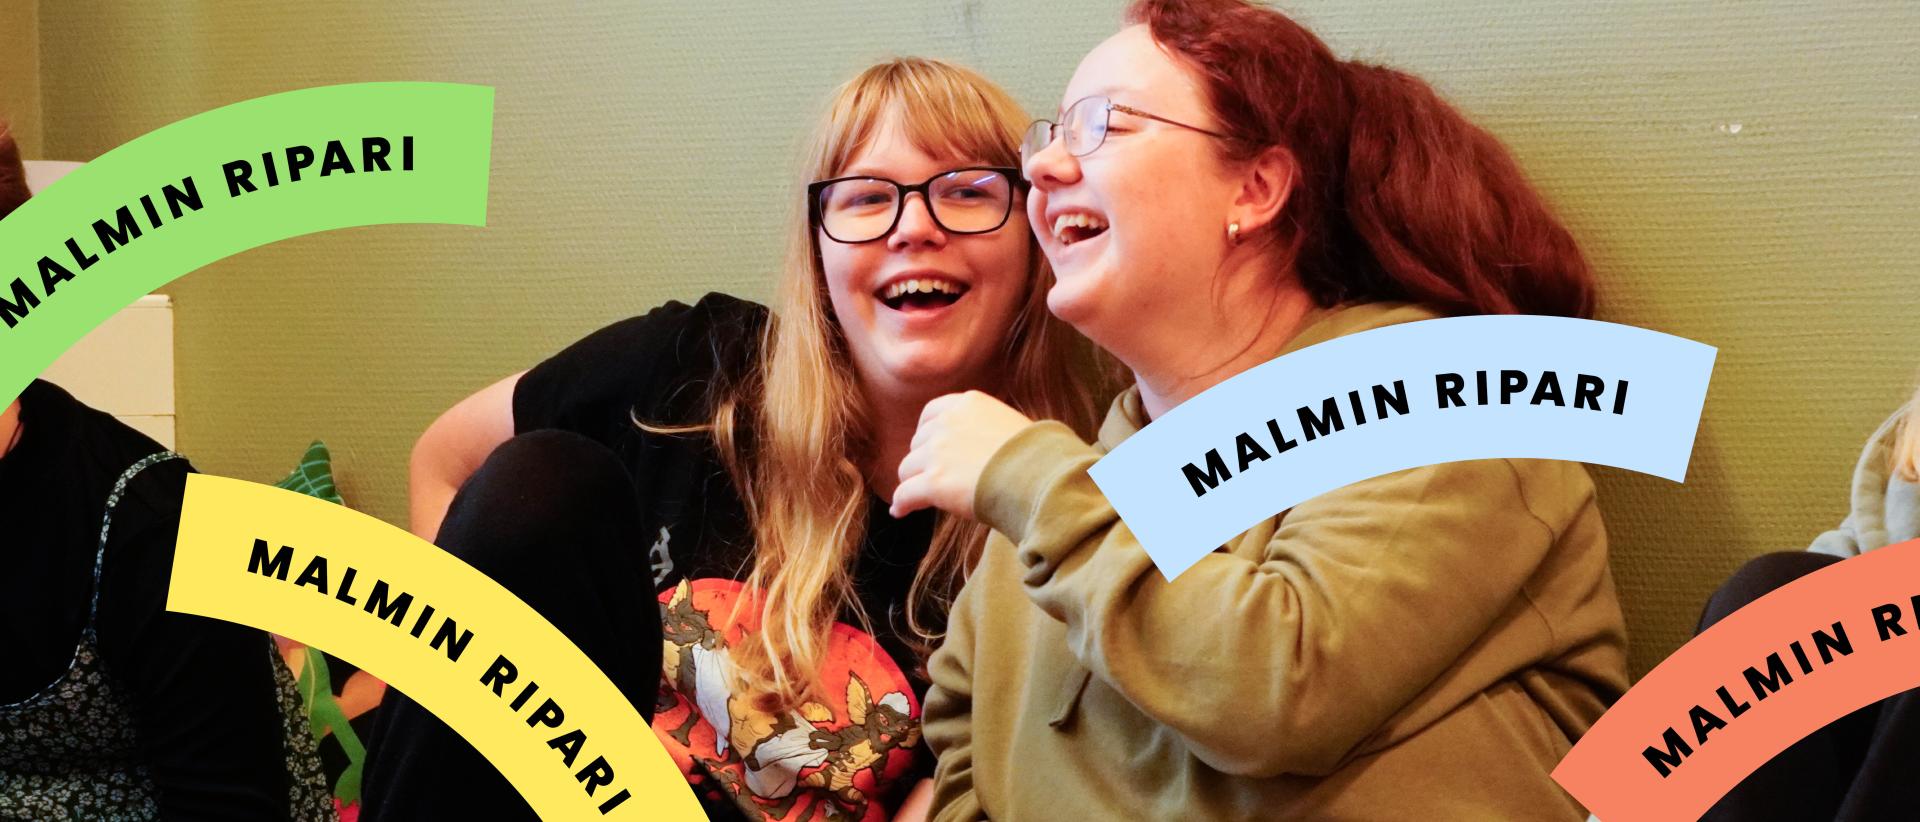 Kaksi nauravaa nuorta, kuvan päällä värikkäitä Malmin ripari -kaaria